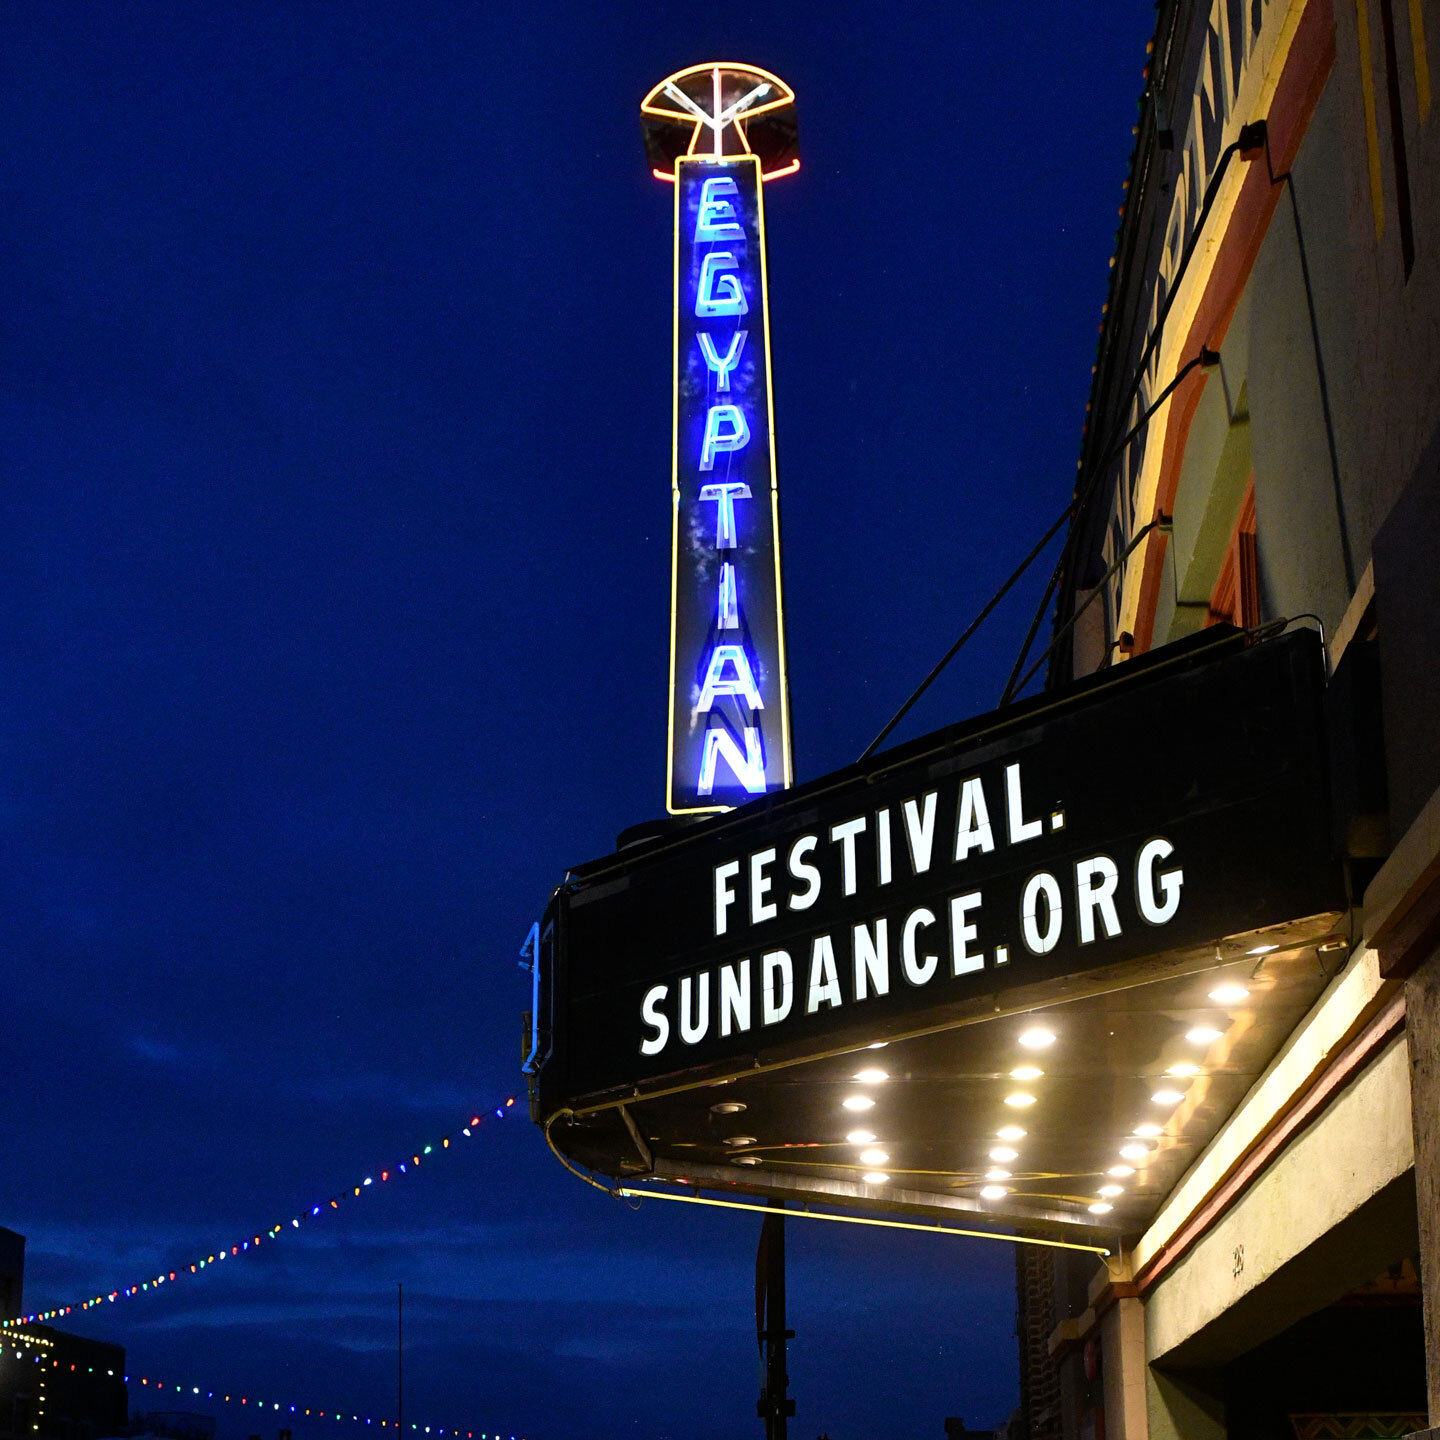 Ägyptisches Theater beim Sundance Film Festival mit Festival.Sundance.Org auf einem Werbeschild